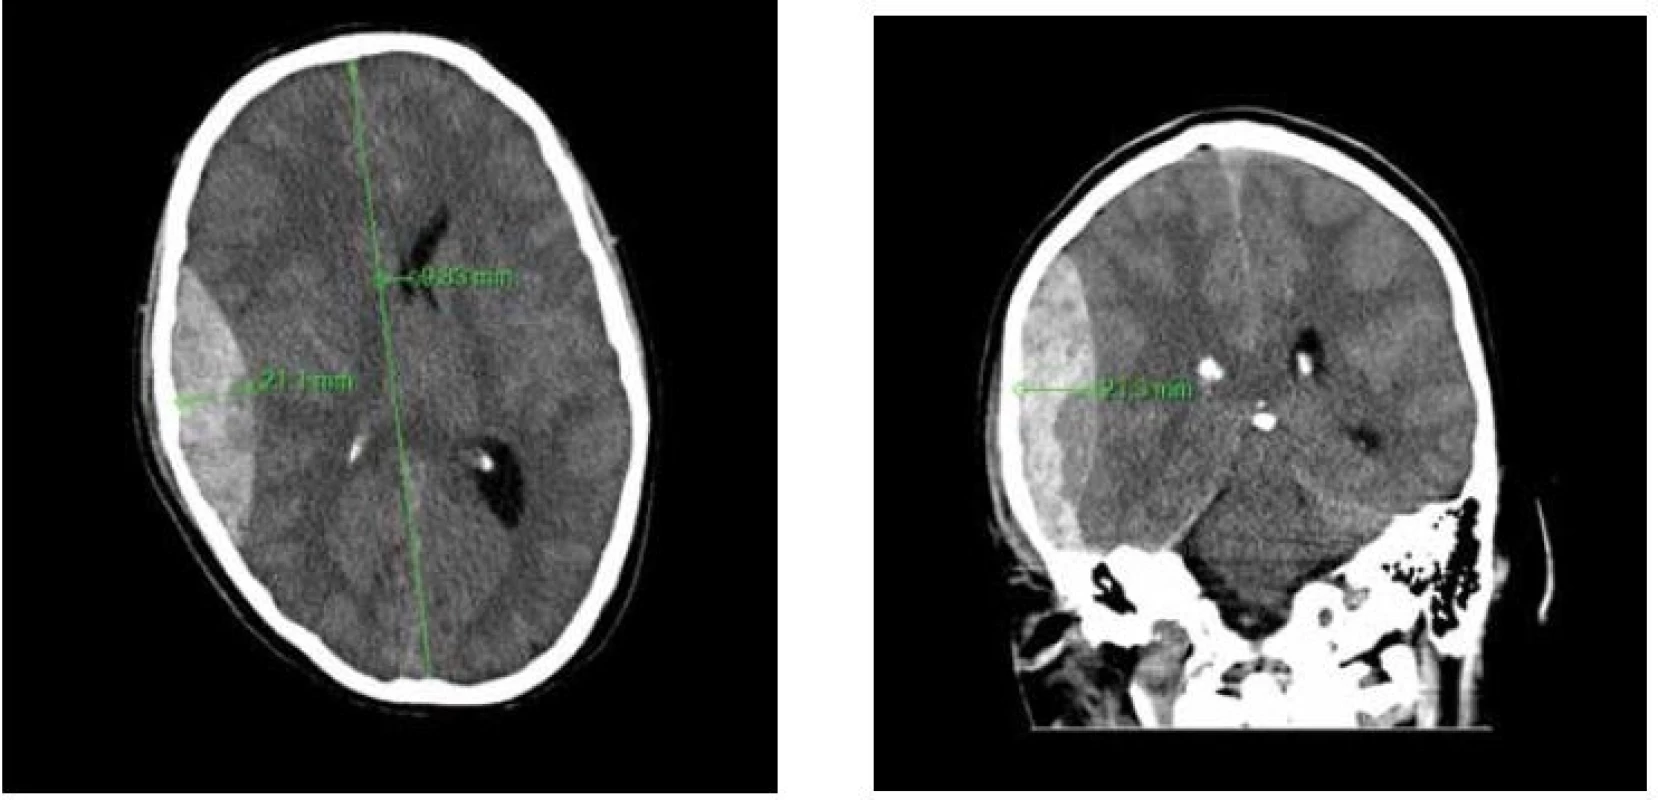 A,B: Nativní CT snímek mozku, axiální řez a koronární řez
Na pravé straně je zachycen fronto-parieto-temporální EDH s typickým bikonvexním tvarem. Šíře hematomu i posun
středočárových struktur jsou jasnou indikací k chirurgické evakuaci hematomu.<br>
Fig. 1 A,B: CT images of a patient’s brain demonstrating fronto-parieto-temporal EDH on axial and coronal image
The typical biconvex shape of EDH is well demonstrated. The width of EDH and midline shift are considerable.